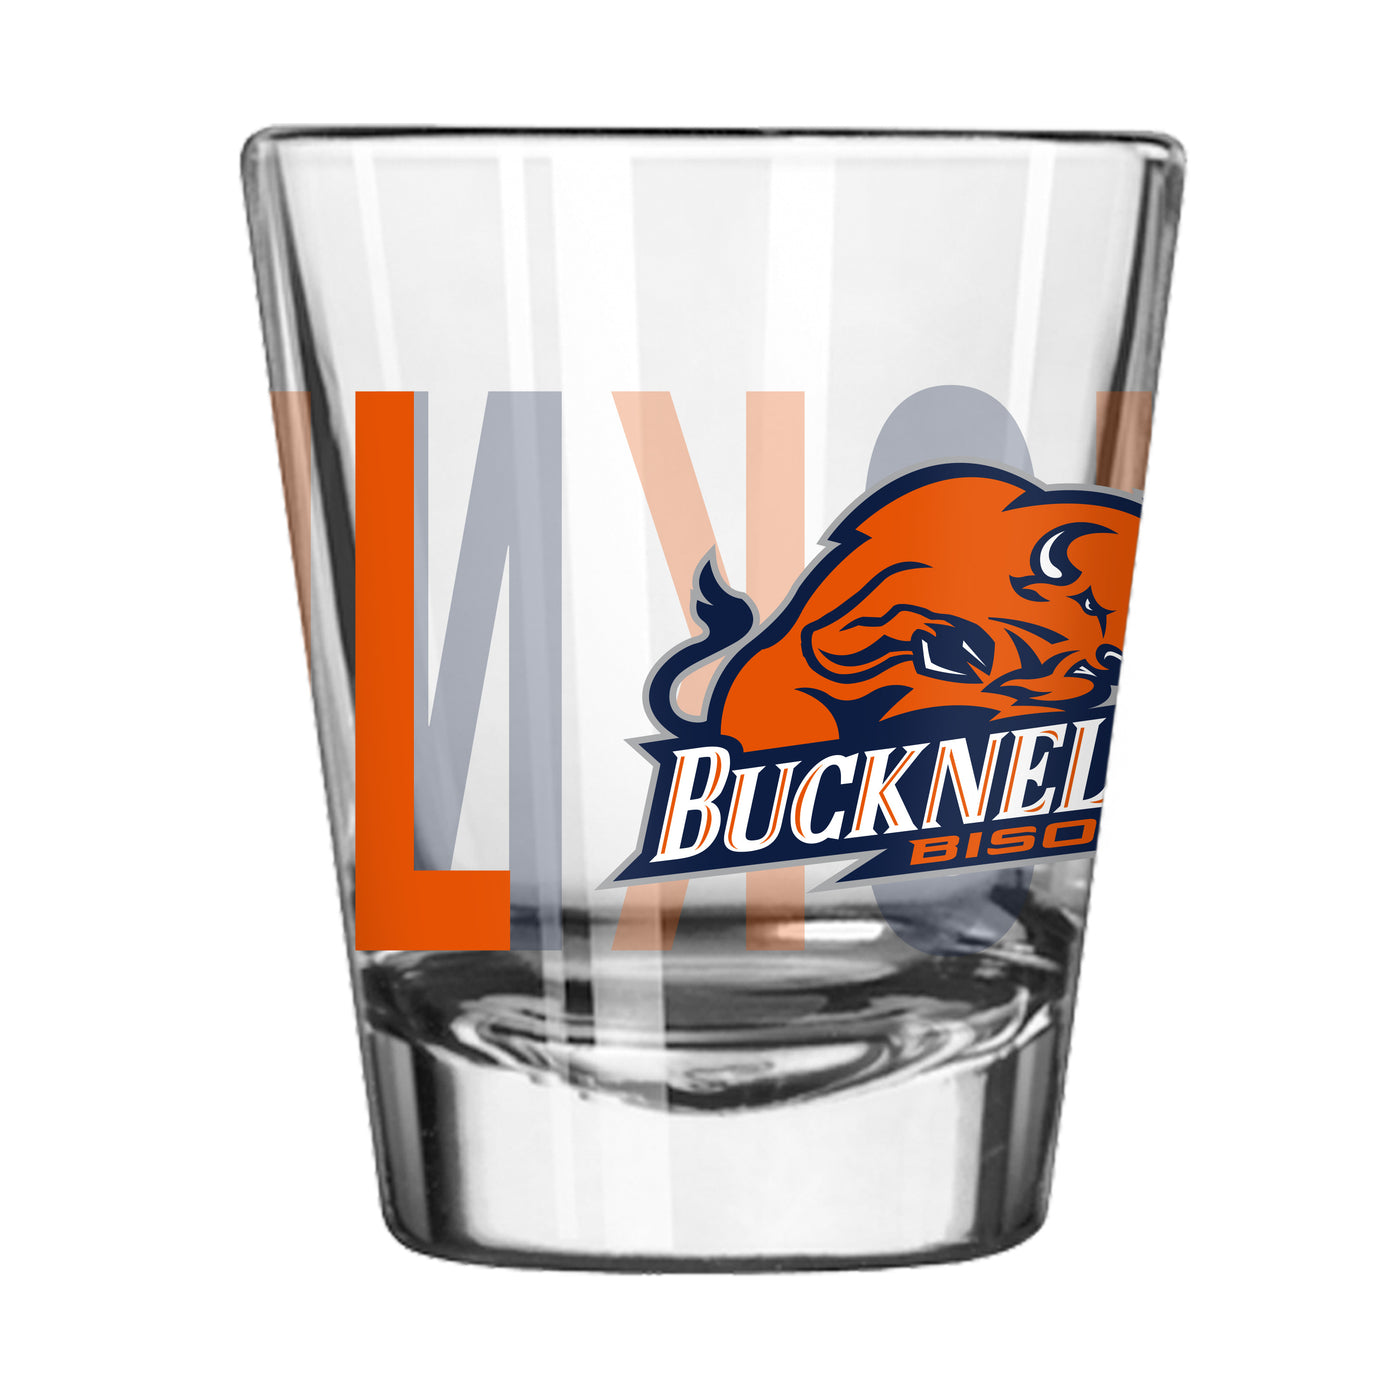 Bucknell 2oz Overtime Shot Glass